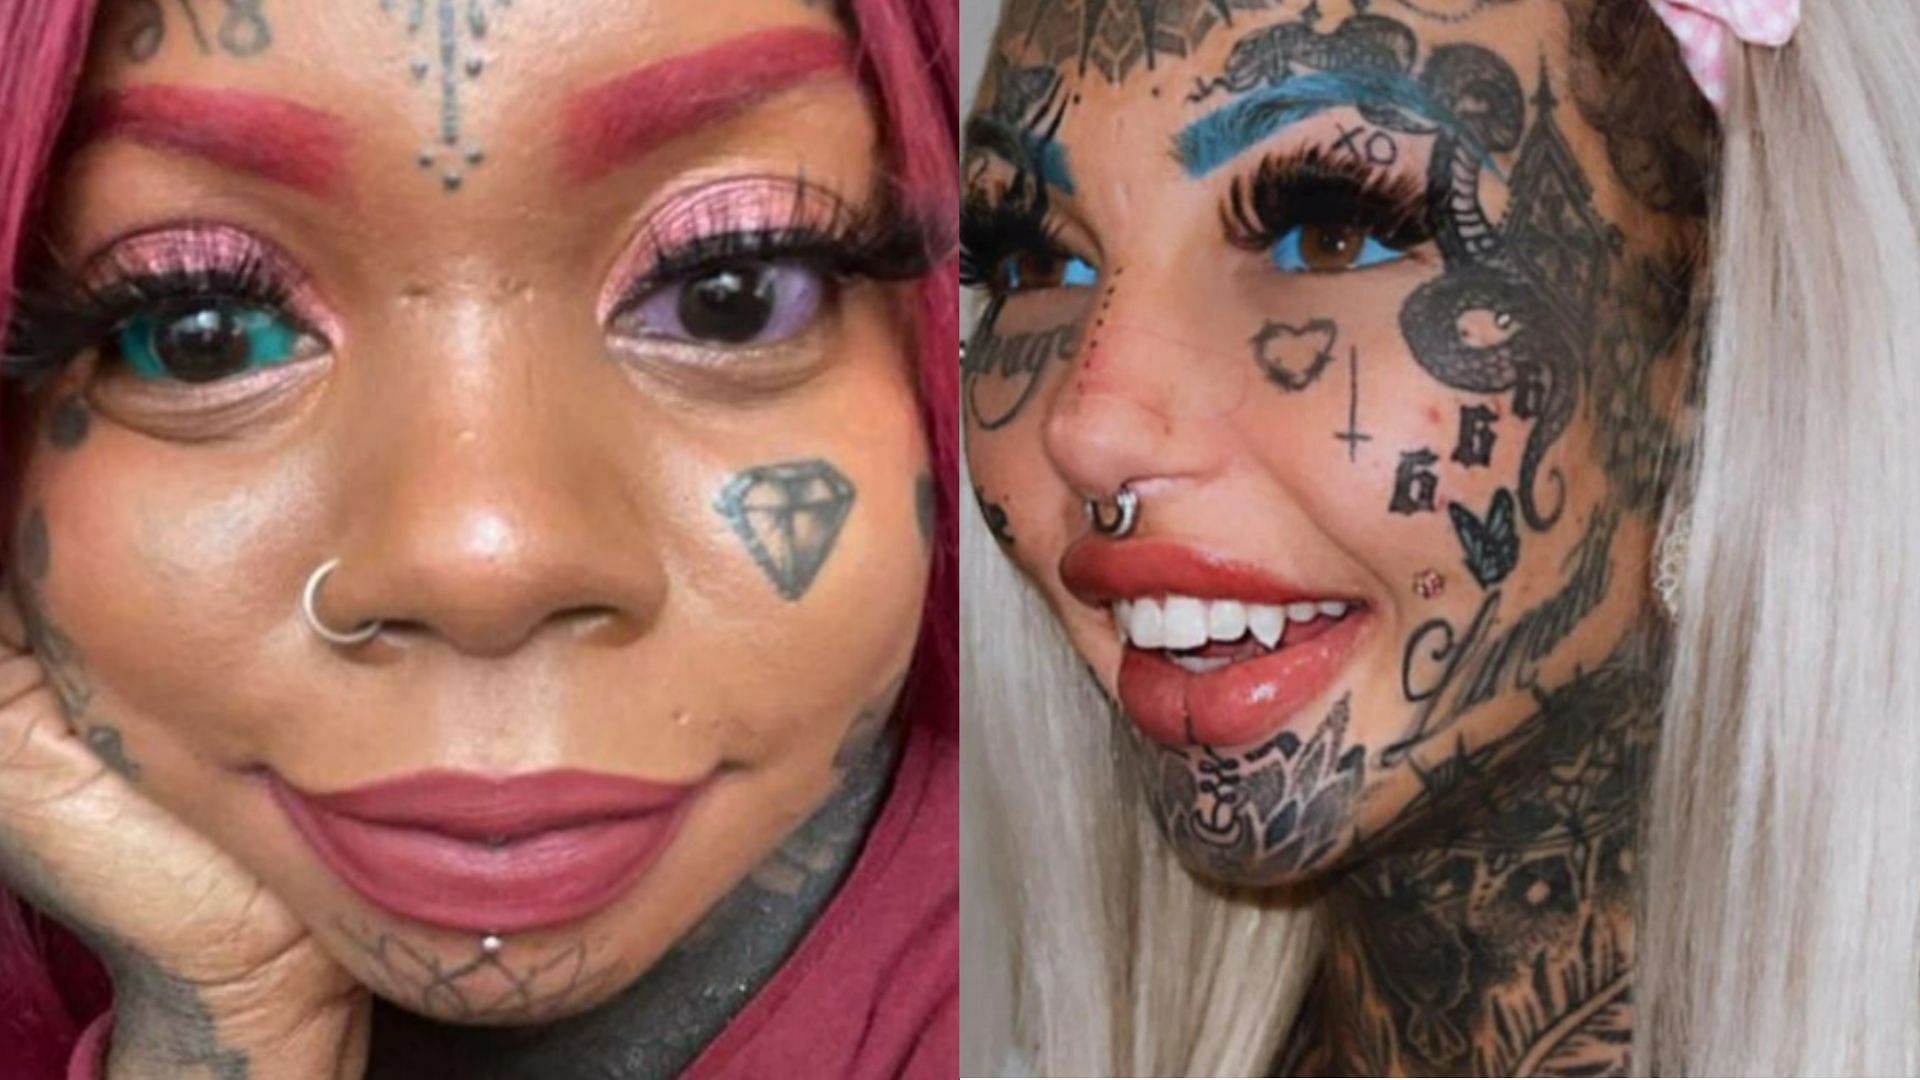 10 Creepiest Eyelid Tattoos  eyelid tattoos  Oddee